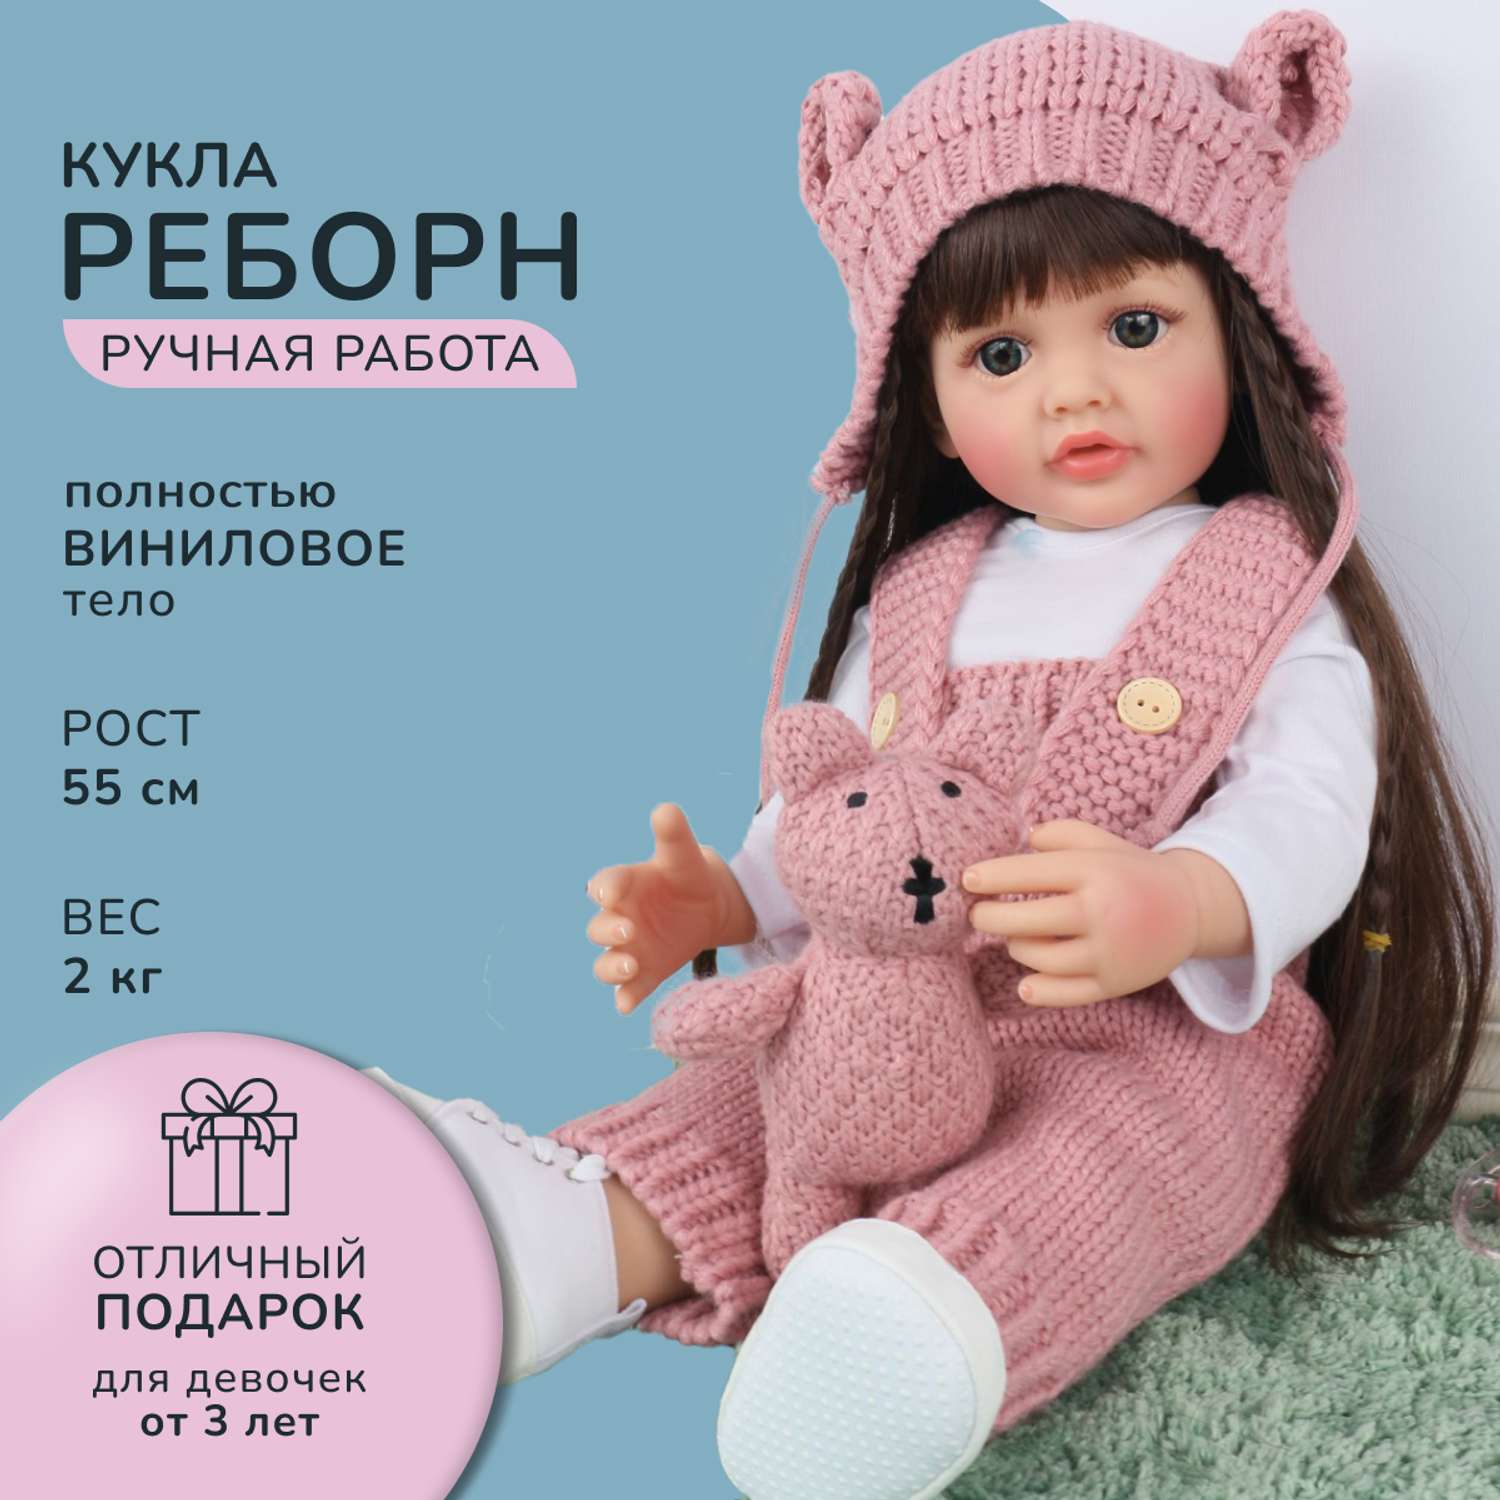 Кукла Реборн QA BABY Анастасия девочка большая пупс набор игрушки для девочки 55 см 5514 - фото 1